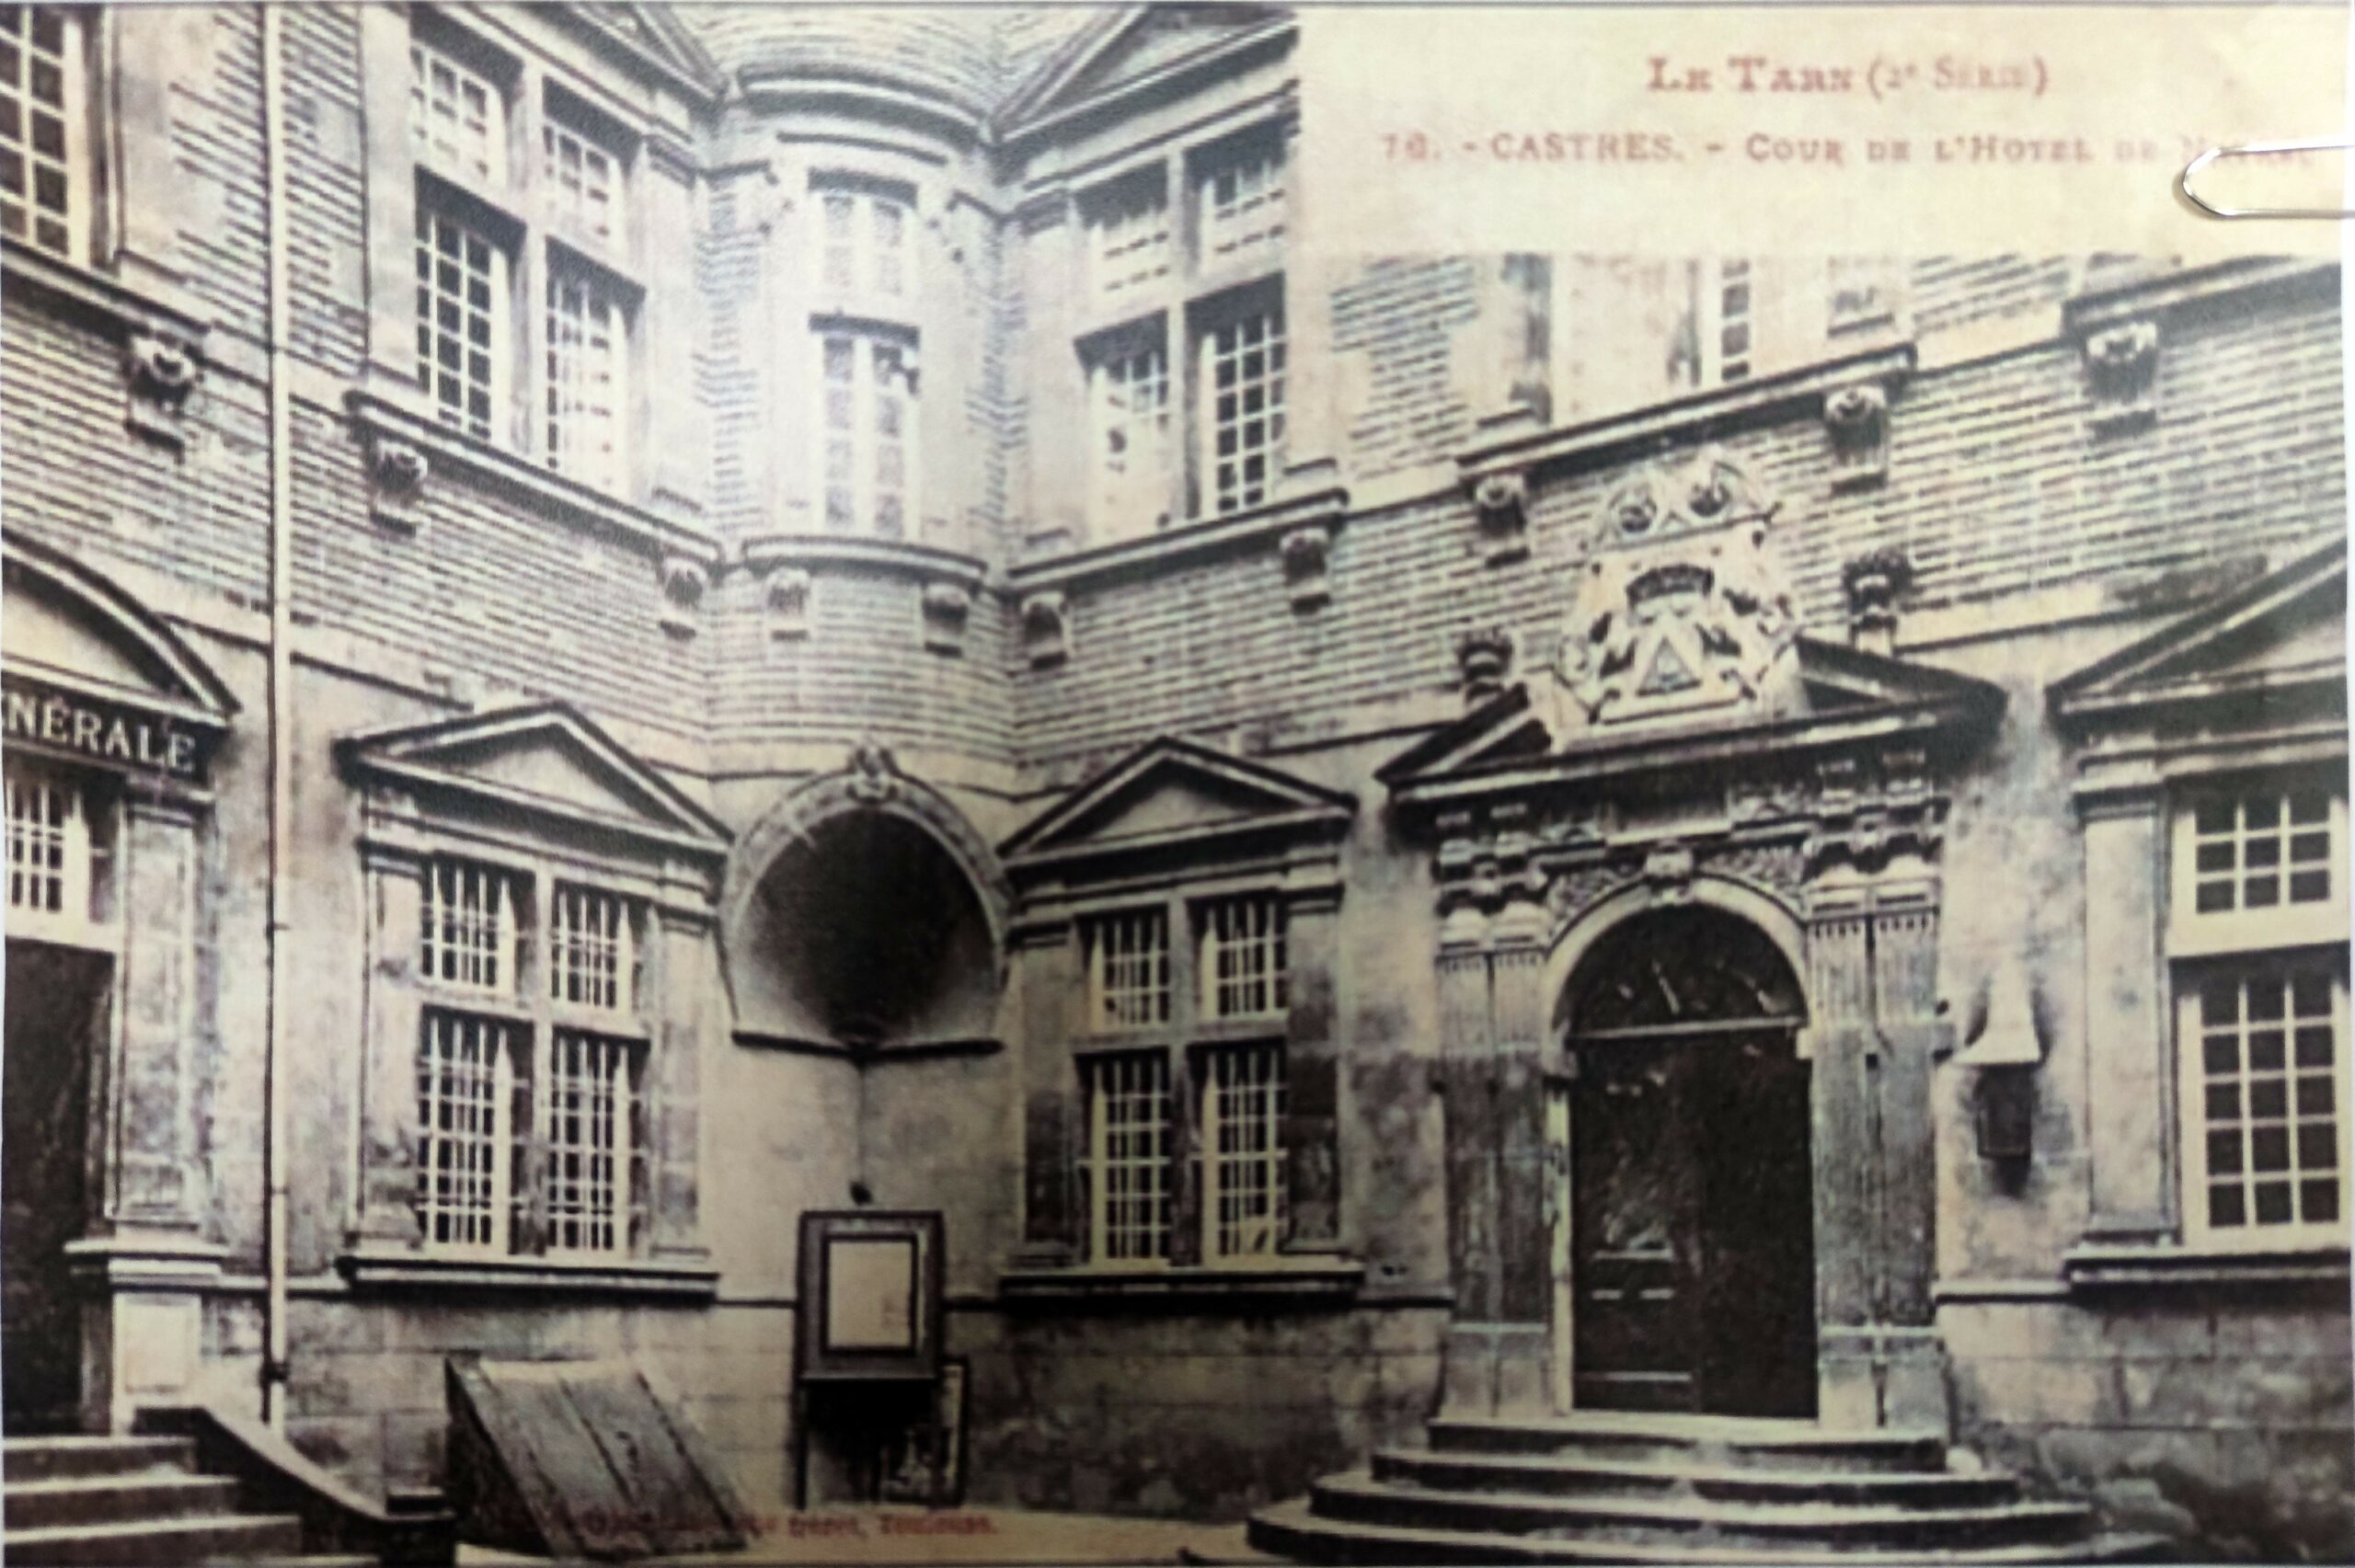 Hôtel de Nayrac - Réfection des façades et des couvertures (compris charpentes) - Castres (81)